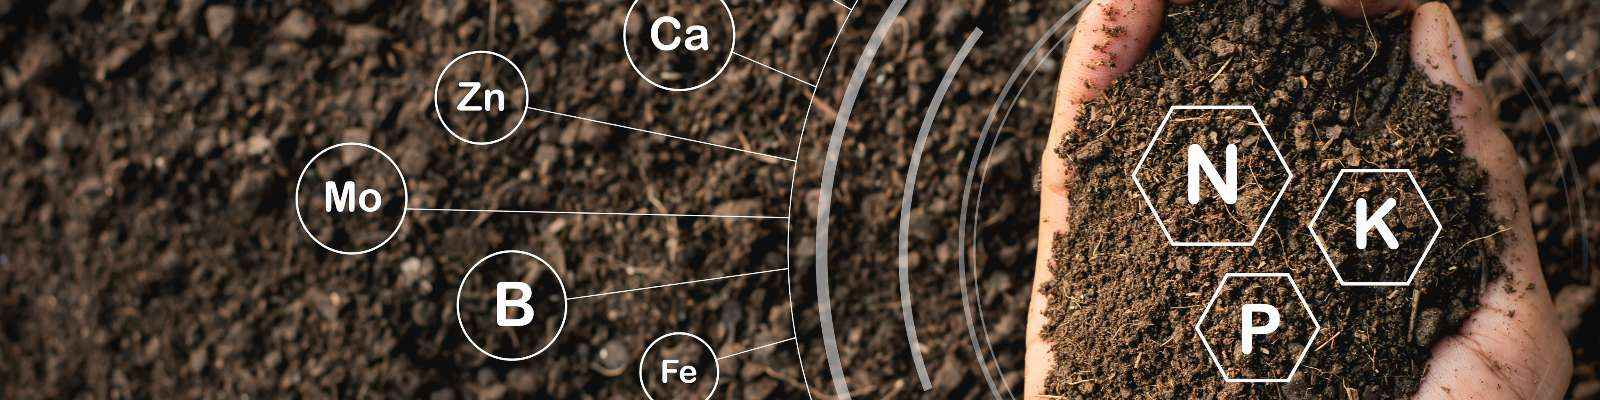 智慧土壤傳感器可以減少肥料對環境的破壞